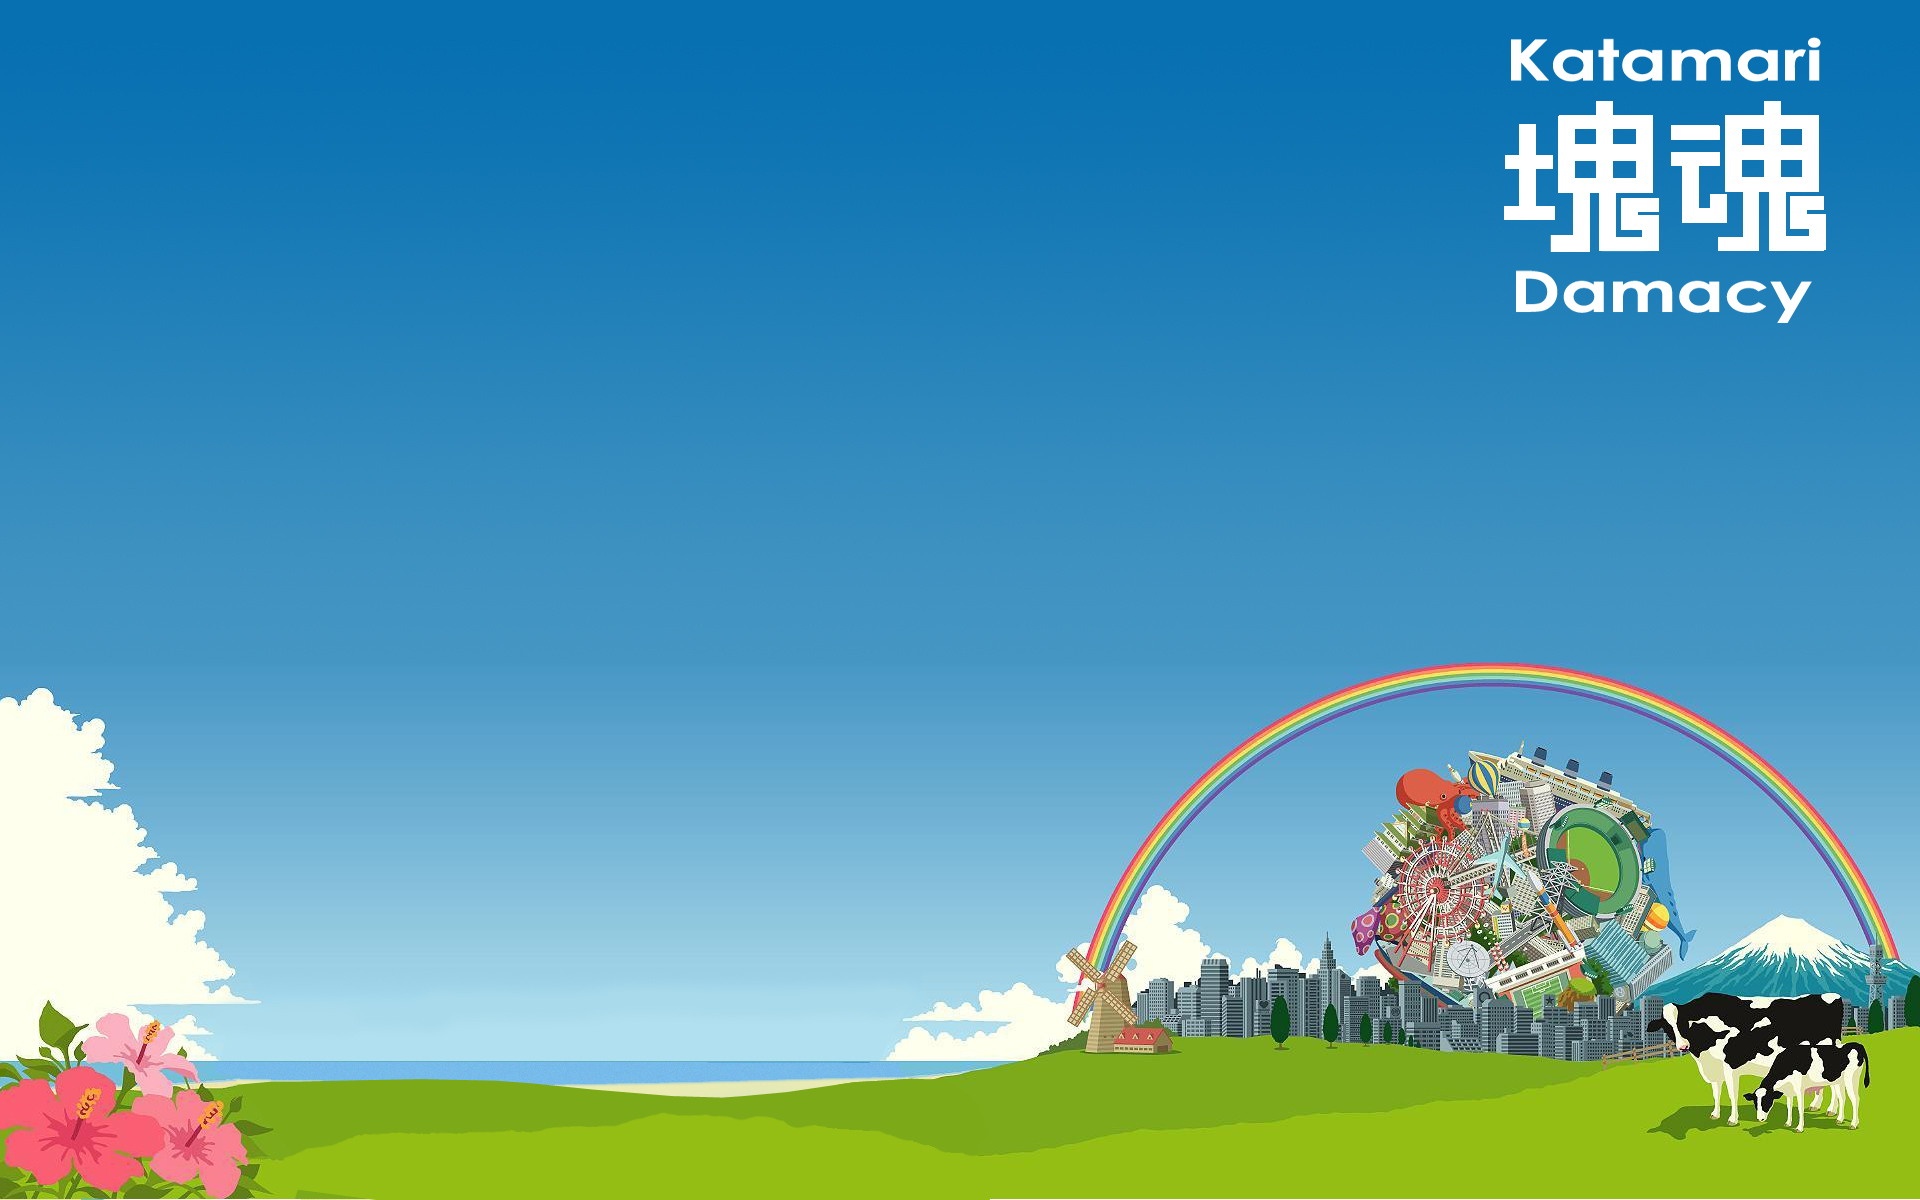 Video Game Katamari Damacy HD Wallpaper | Background Image